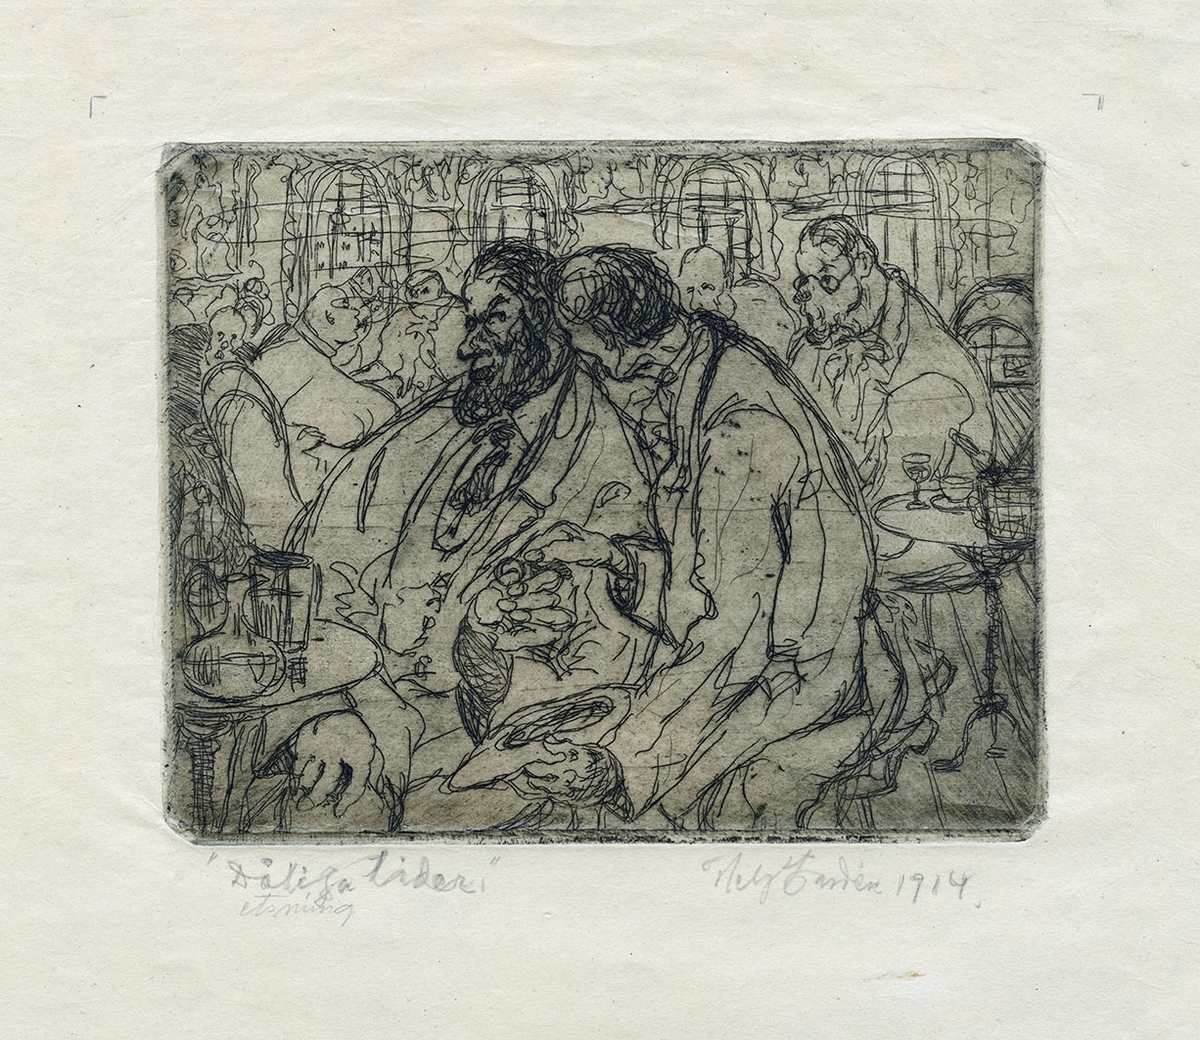 Restaurangmiljö. I förgrunden två män i knäfigur. Den ene, sittande vid bord med glas och karaff, bjuder den andre iklädd överrock och med hatten i hand, på snus. Kroggäster myllrar i bakgrunden.